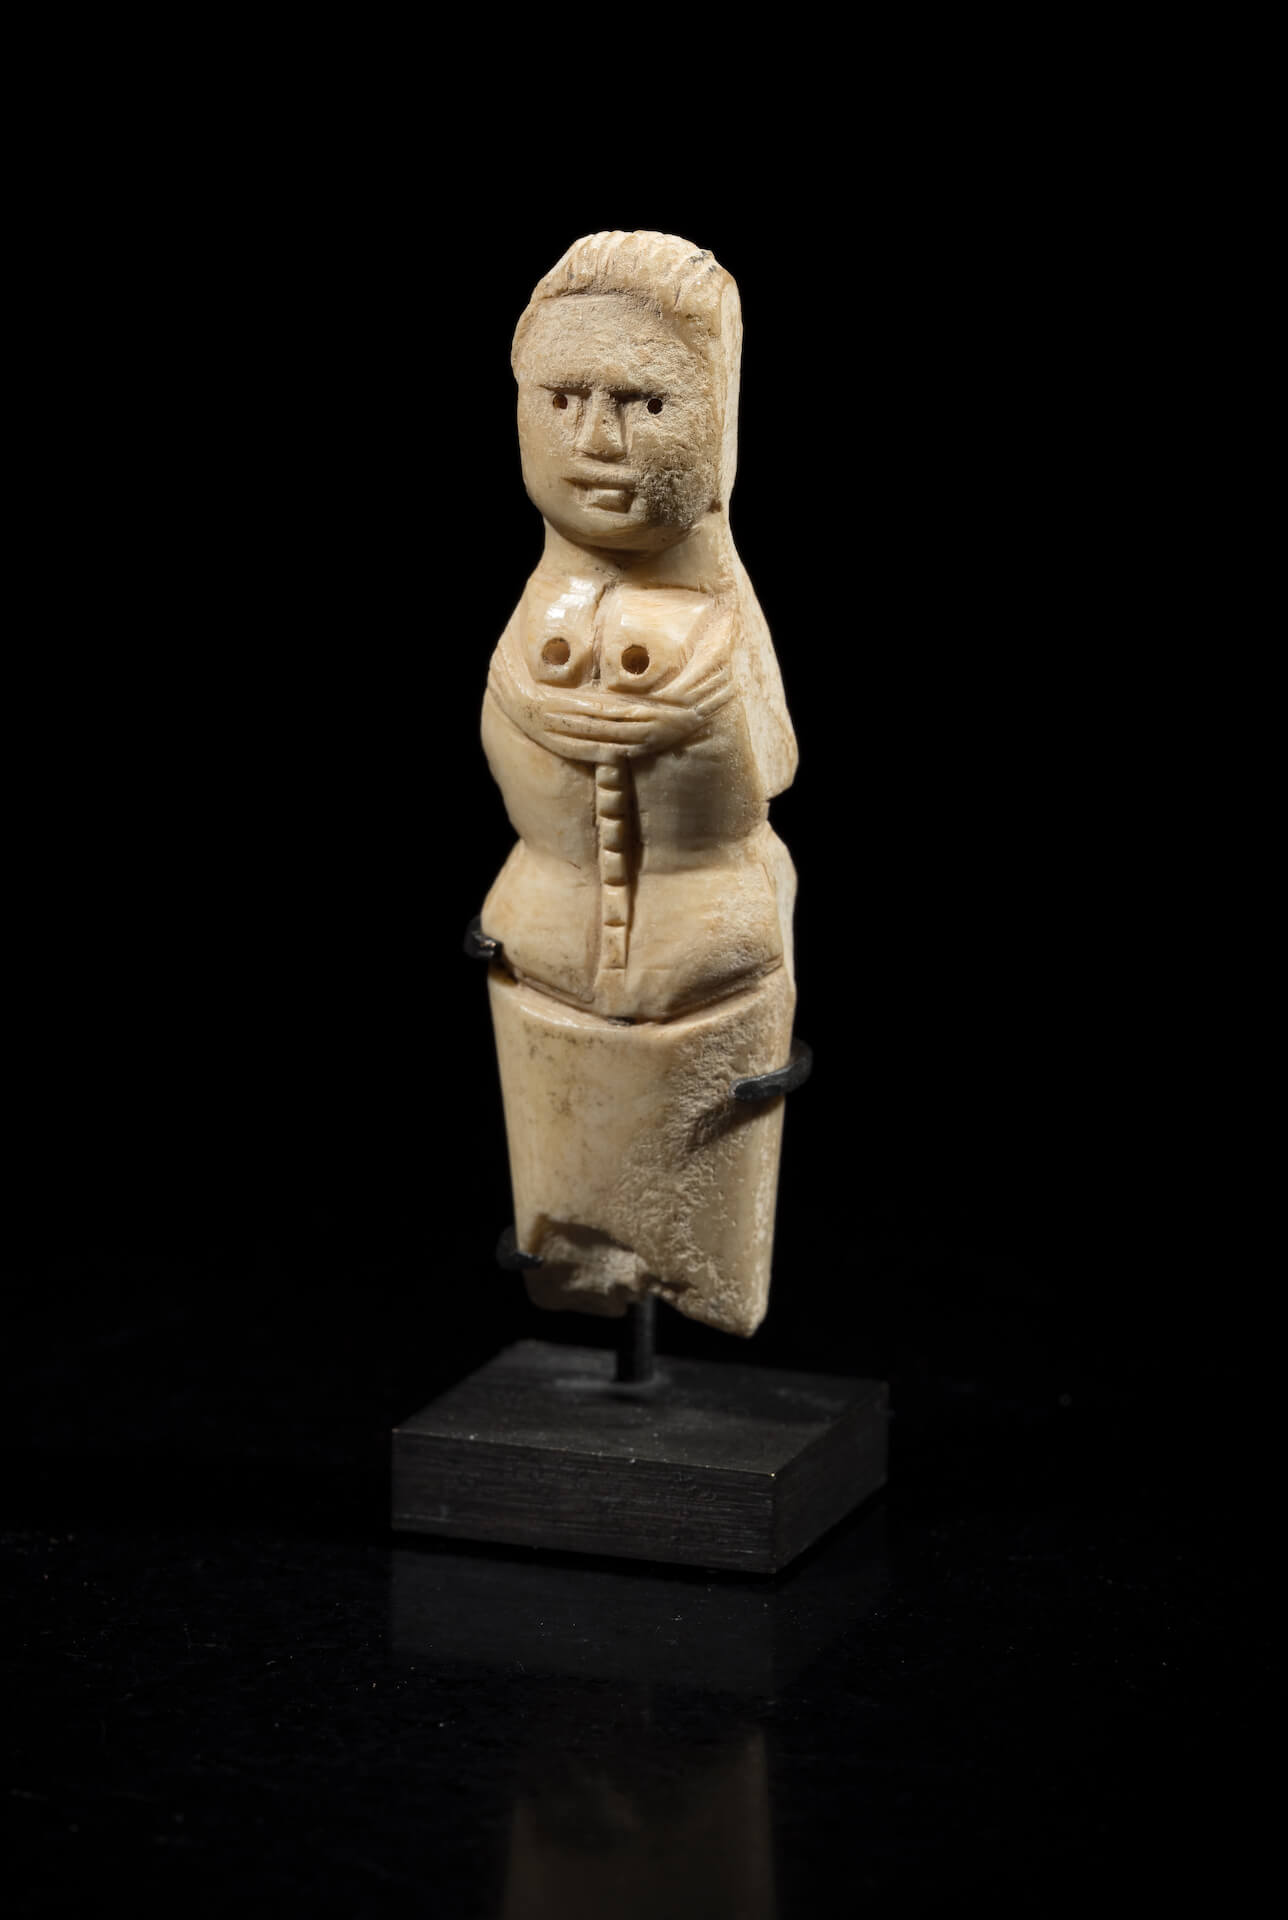 Votivní soška nebo amulet z kosti - Doba římská (1. - 2. stol. n.l. ) - Planeta lidí